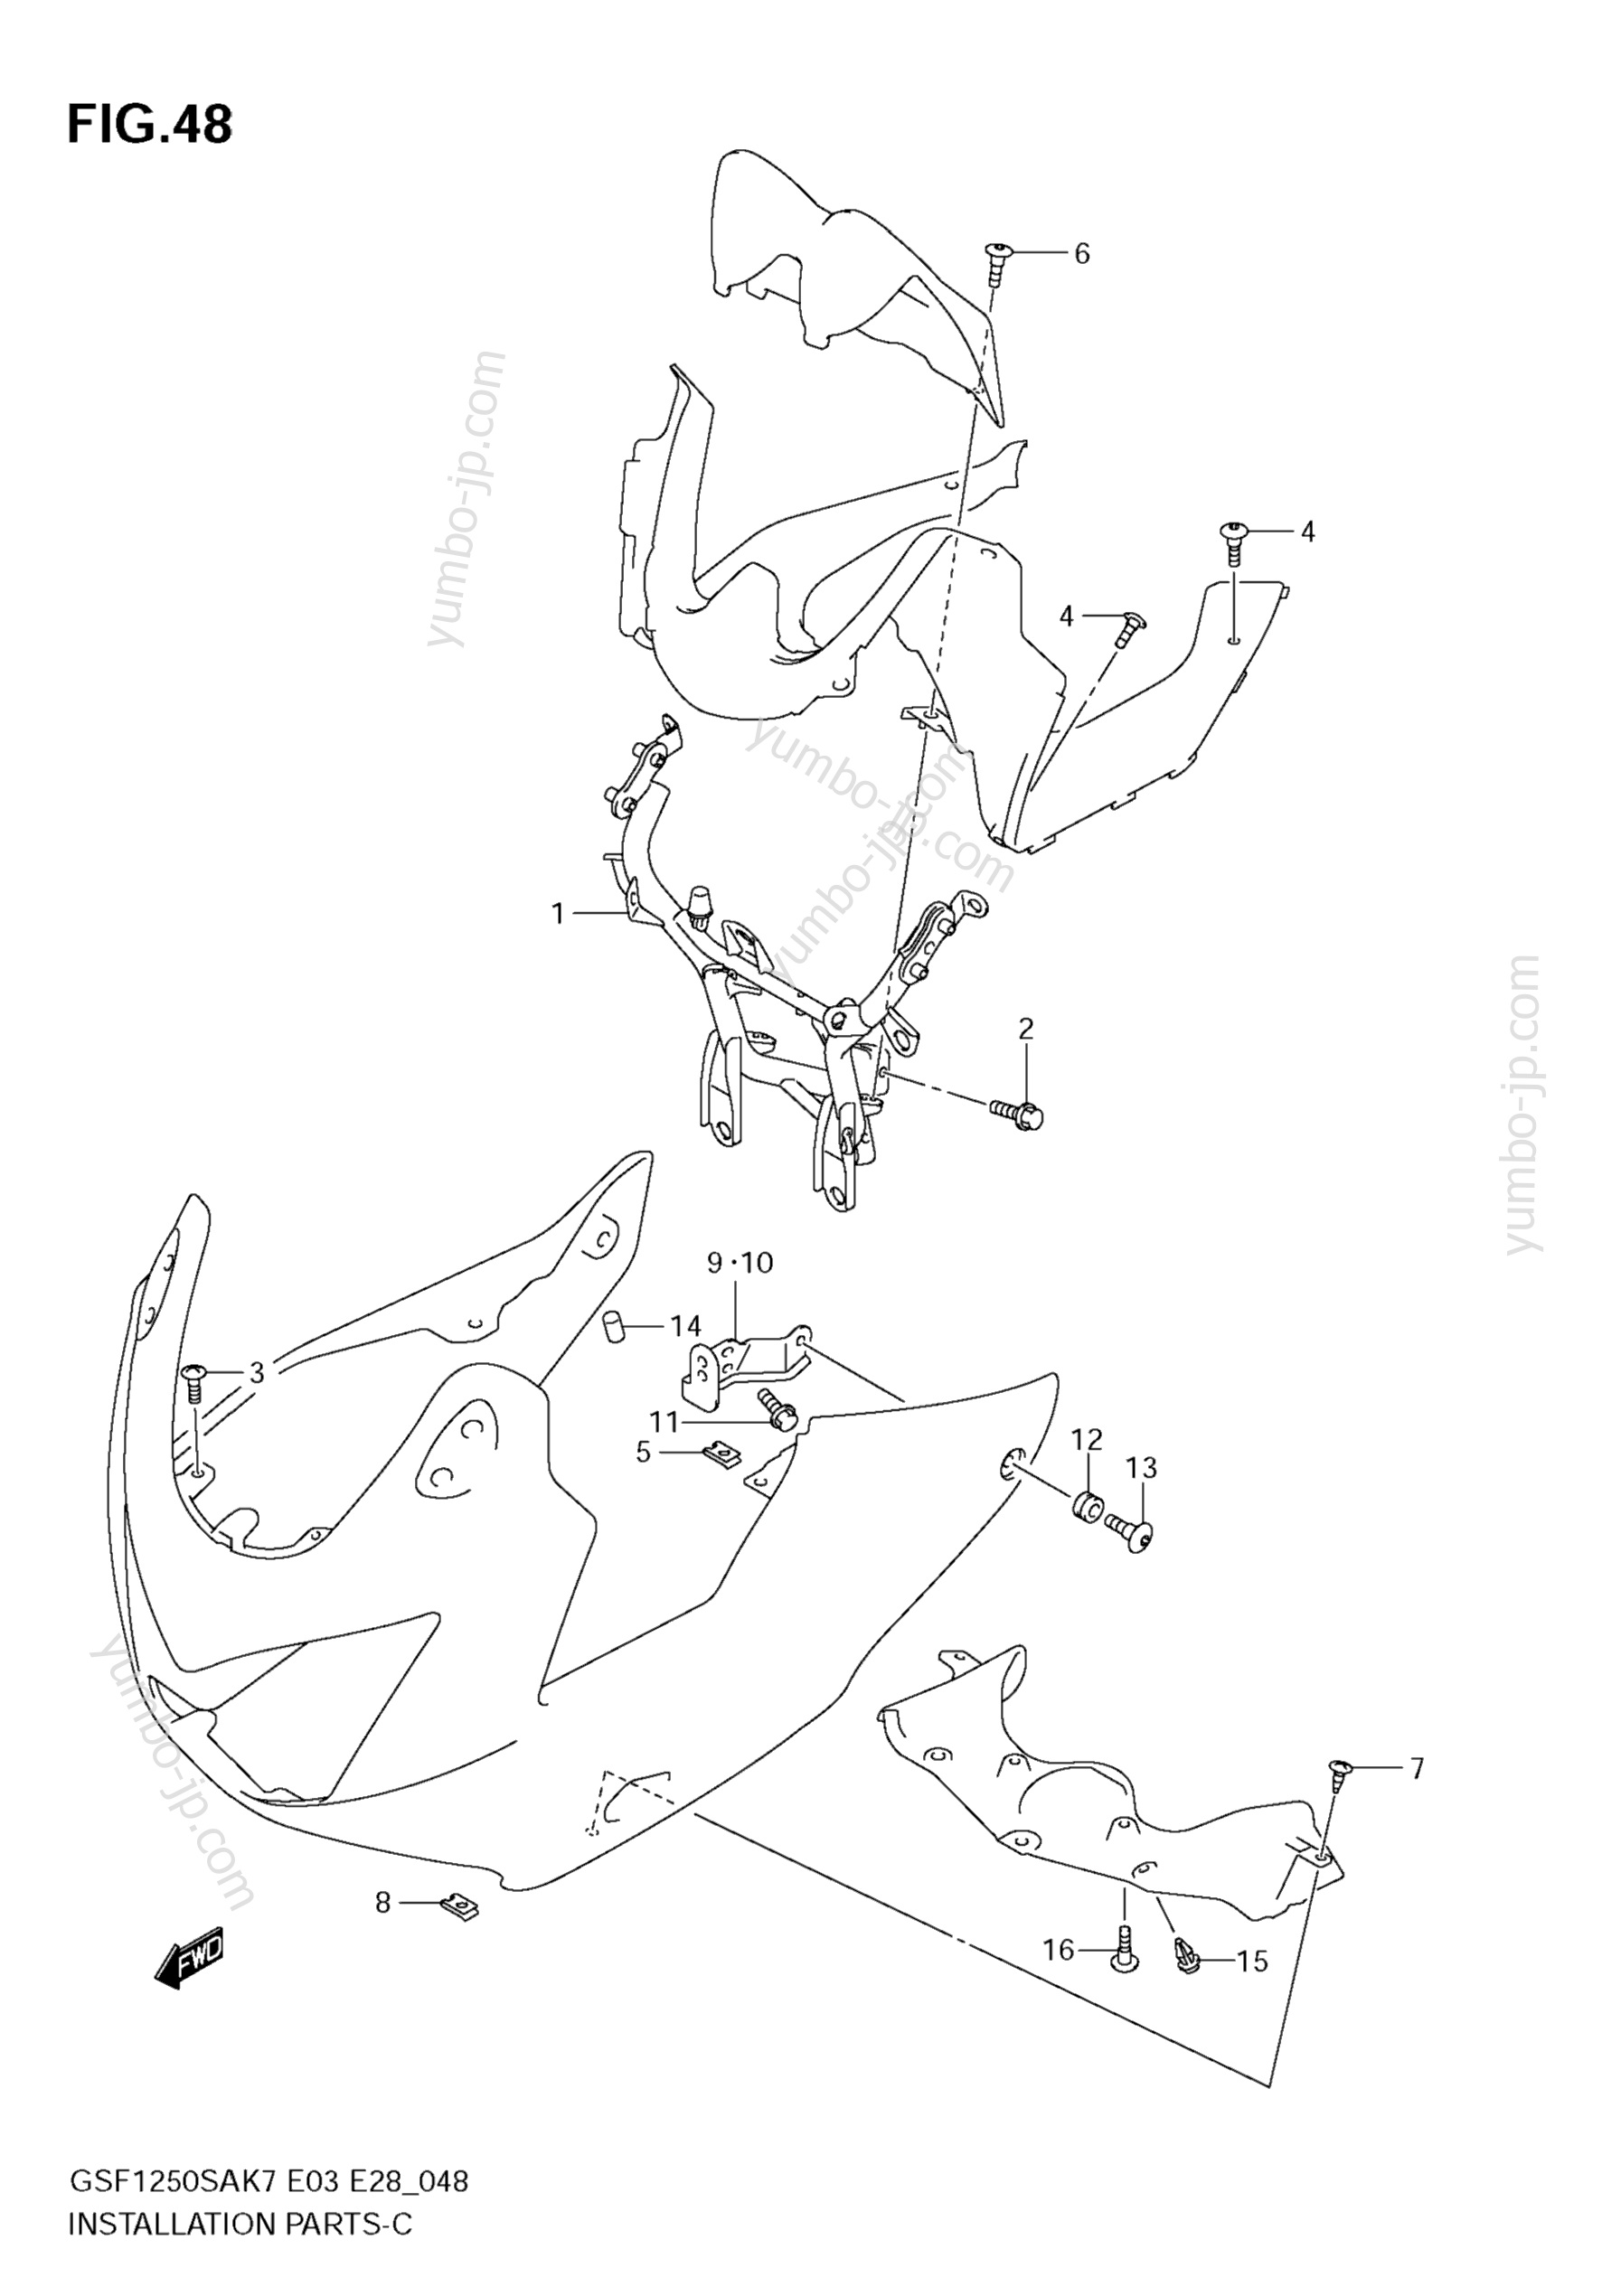 COWLING INSTALLATION PARTS для мотоциклов SUZUKI Bandit (GSF1250S) 2008 г.